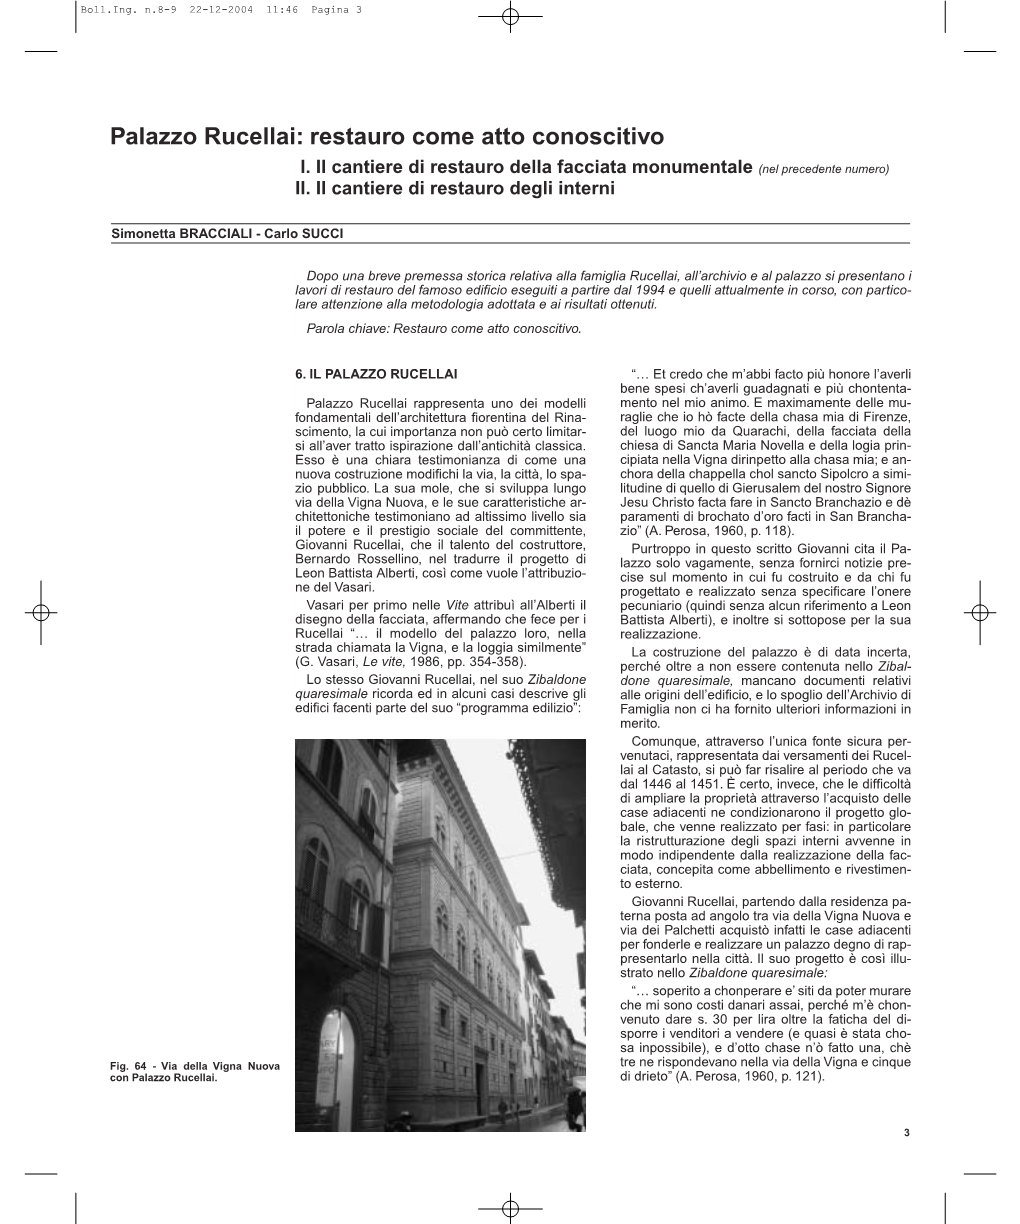 Palazzo Rucellai: Restauro Come Atto Conoscitivo